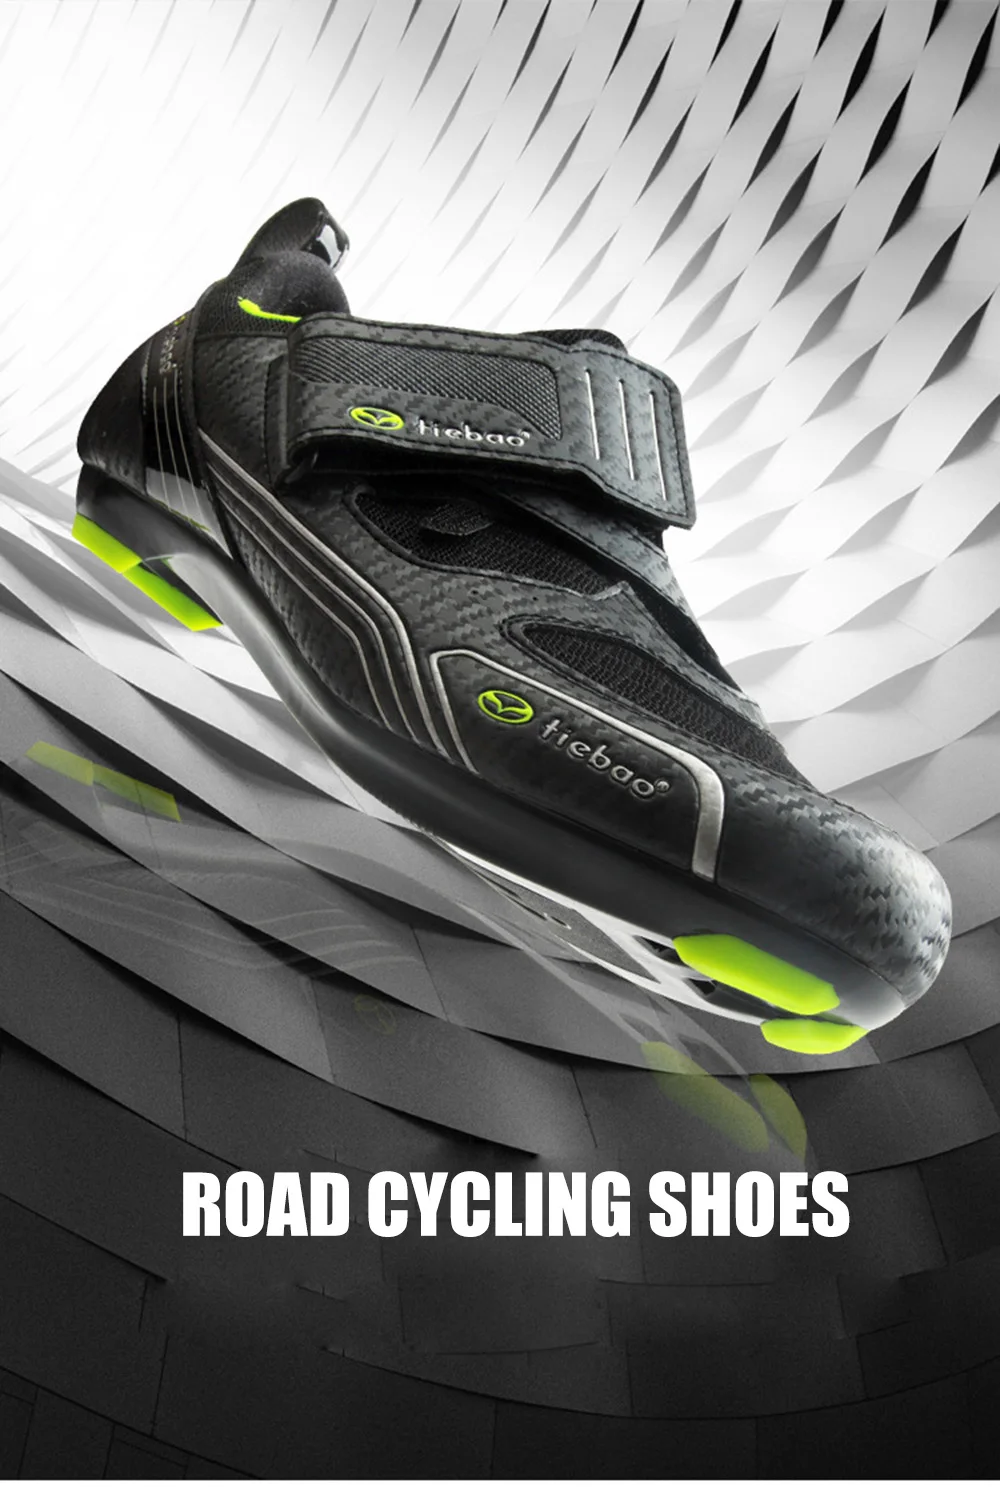 TIEBAO обувь для шоссейного велосипеда sapatilha ciclismo bicicleta carretera, мужские кроссовки для езды на велосипеде, женские кроссовки для шоссейного велосипеда, обувь для велосипеда